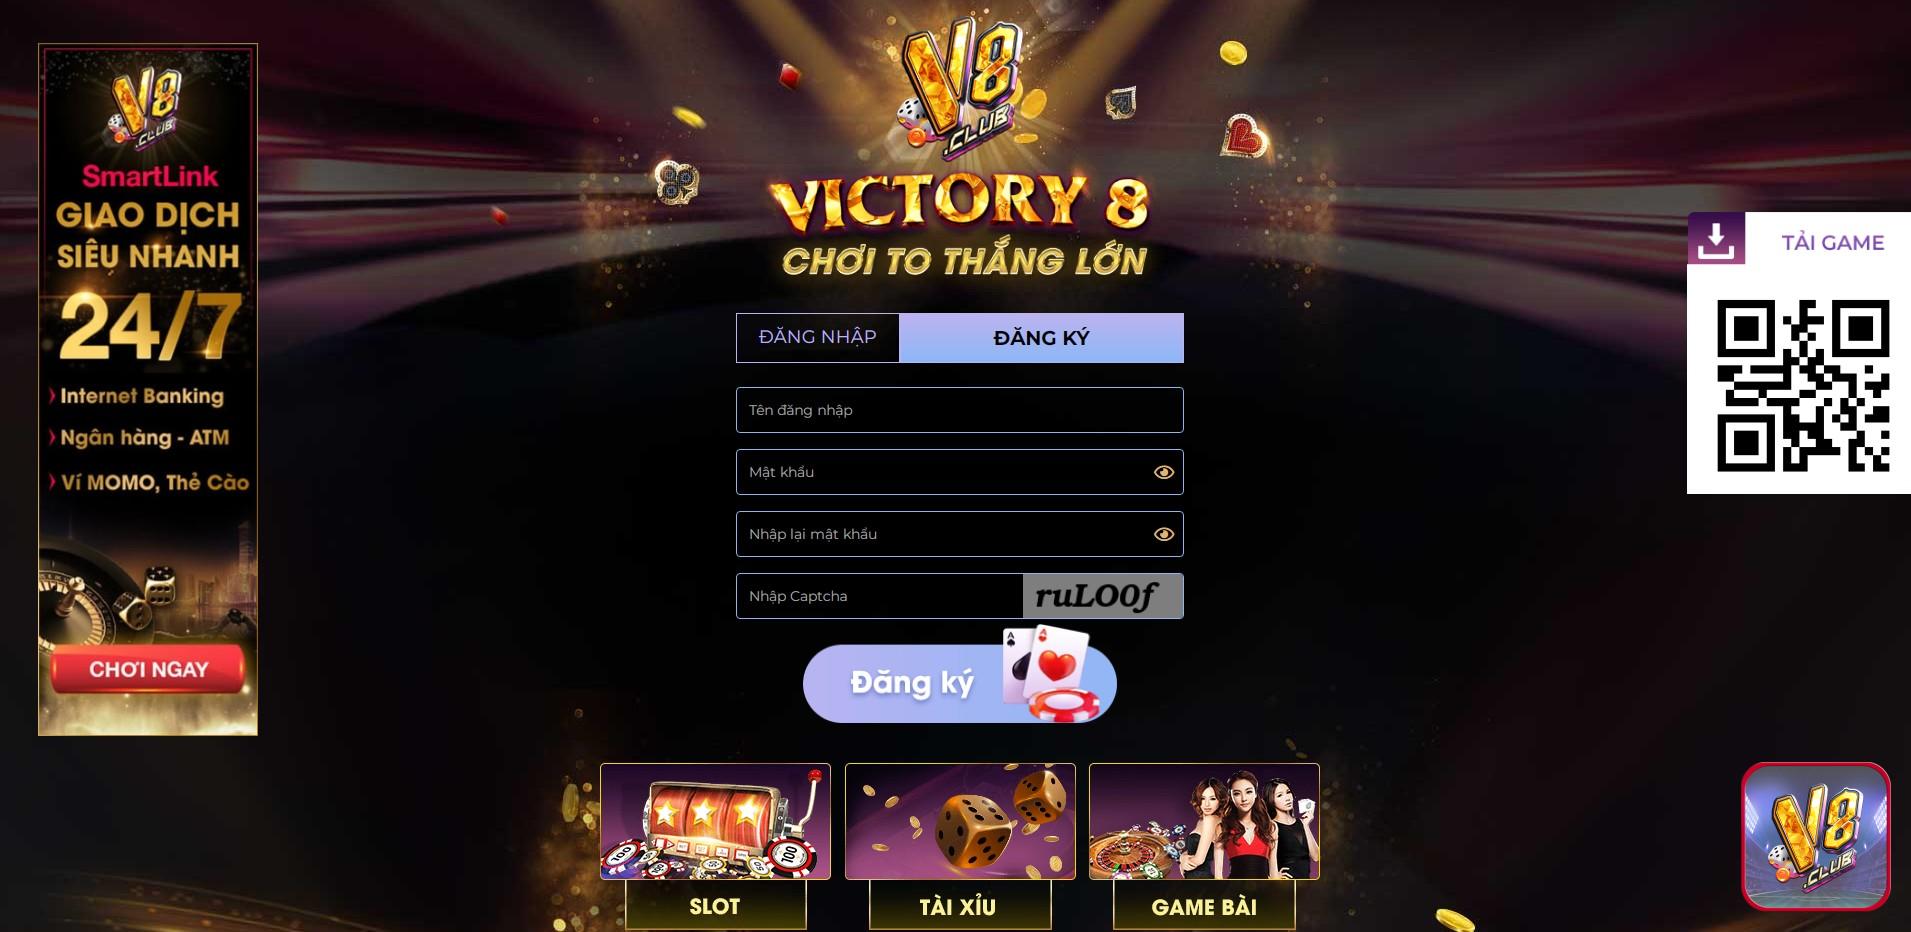 Hoàn thành biểu mẫu để đăng ký tài khoản game Kim Cương V8Club 